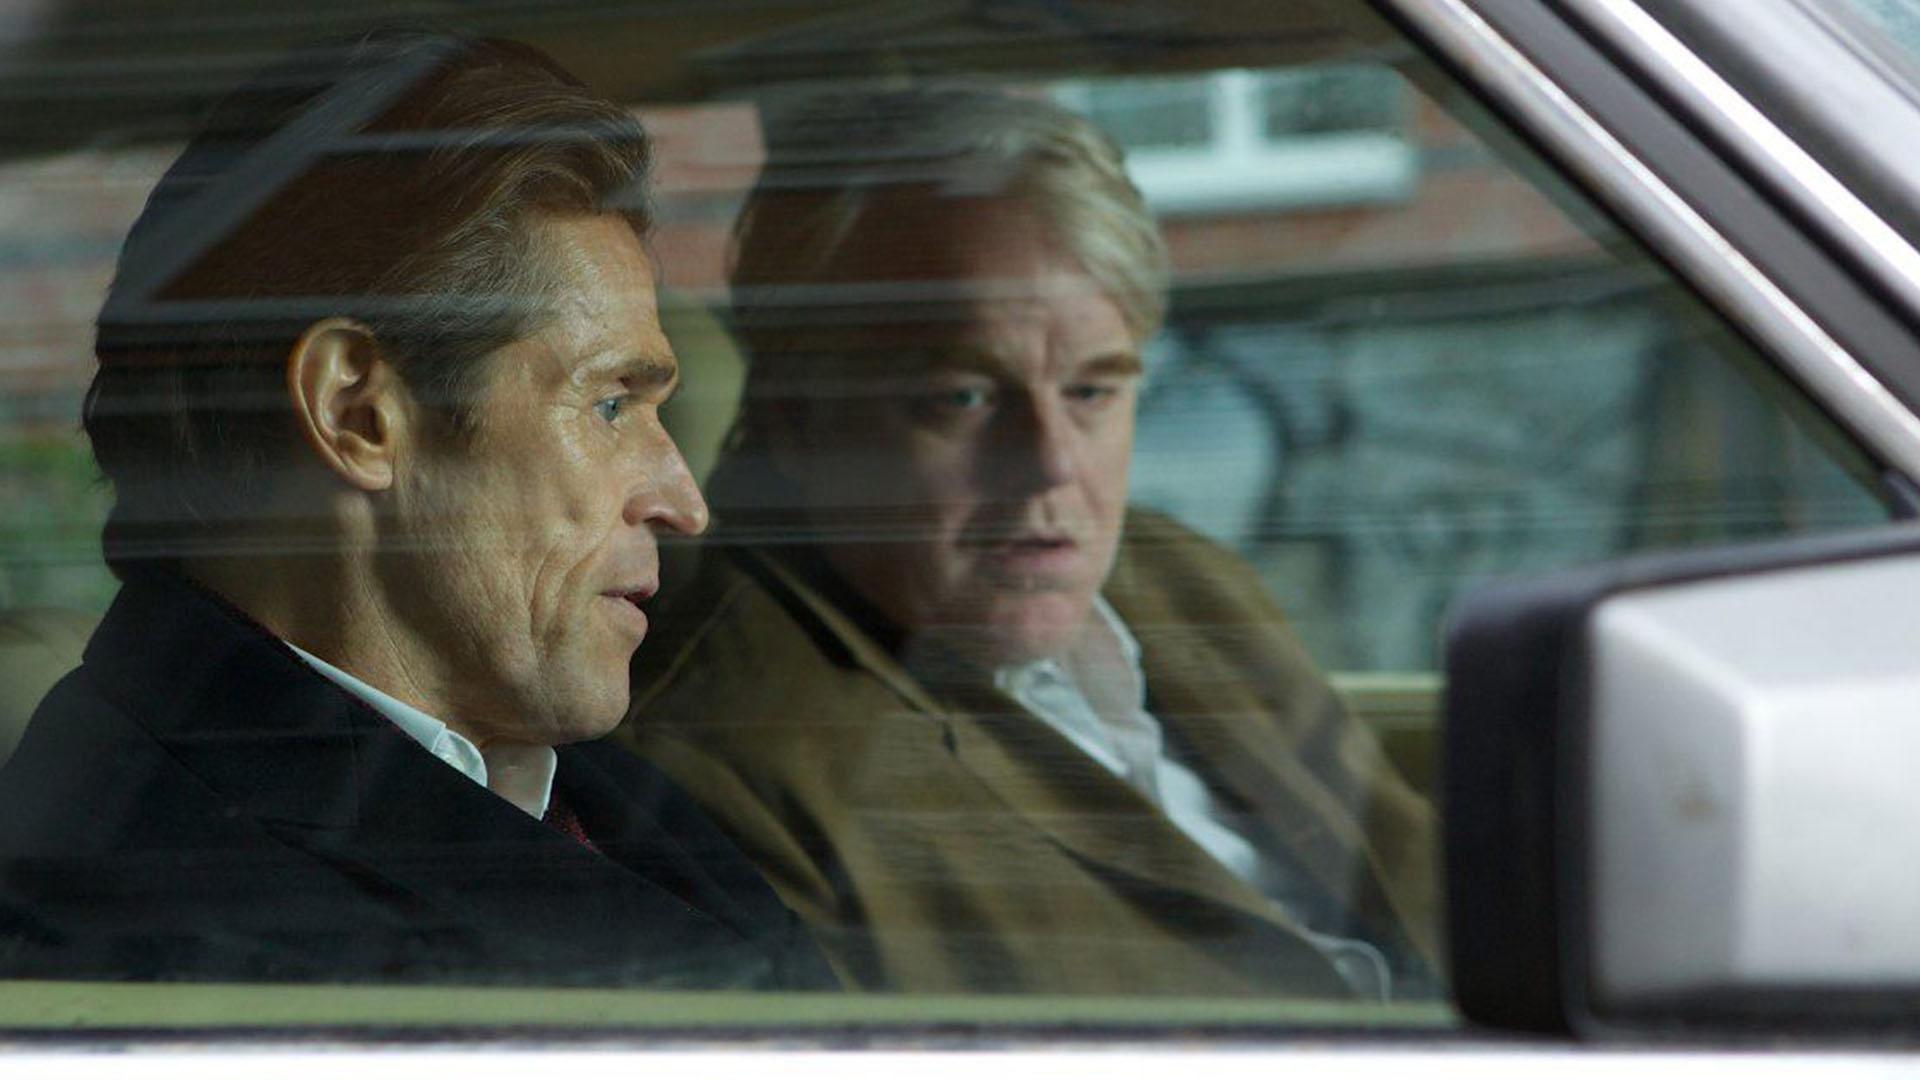 فیلیپ سیمور هافمن همراه ویلم دفو در فیلم A Most Wanted Man در ماشین نشسته است